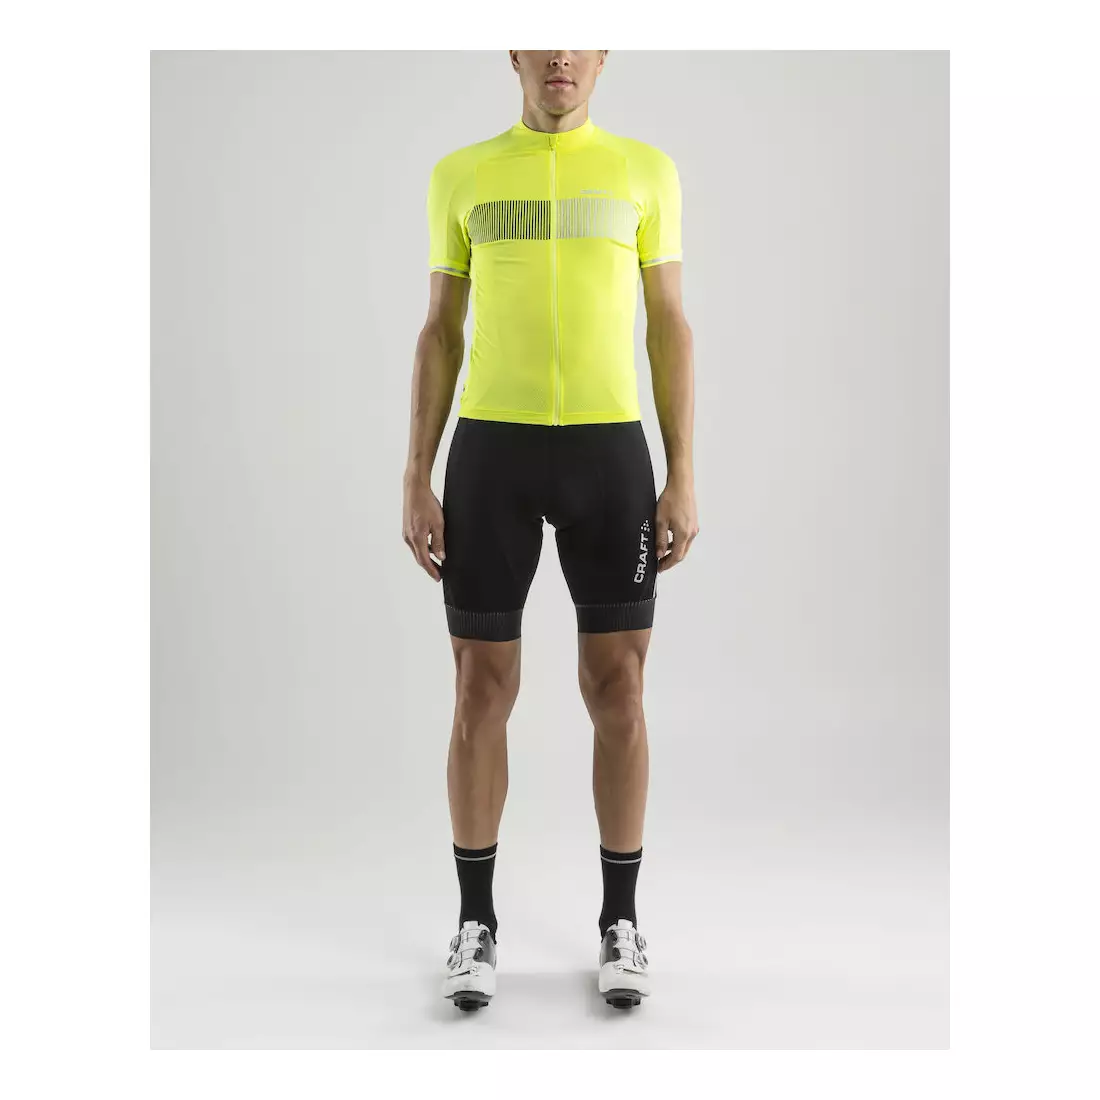 CRAFT Verve Glow pánský cyklistický dres, fluorově žlutý, 1904995-2809